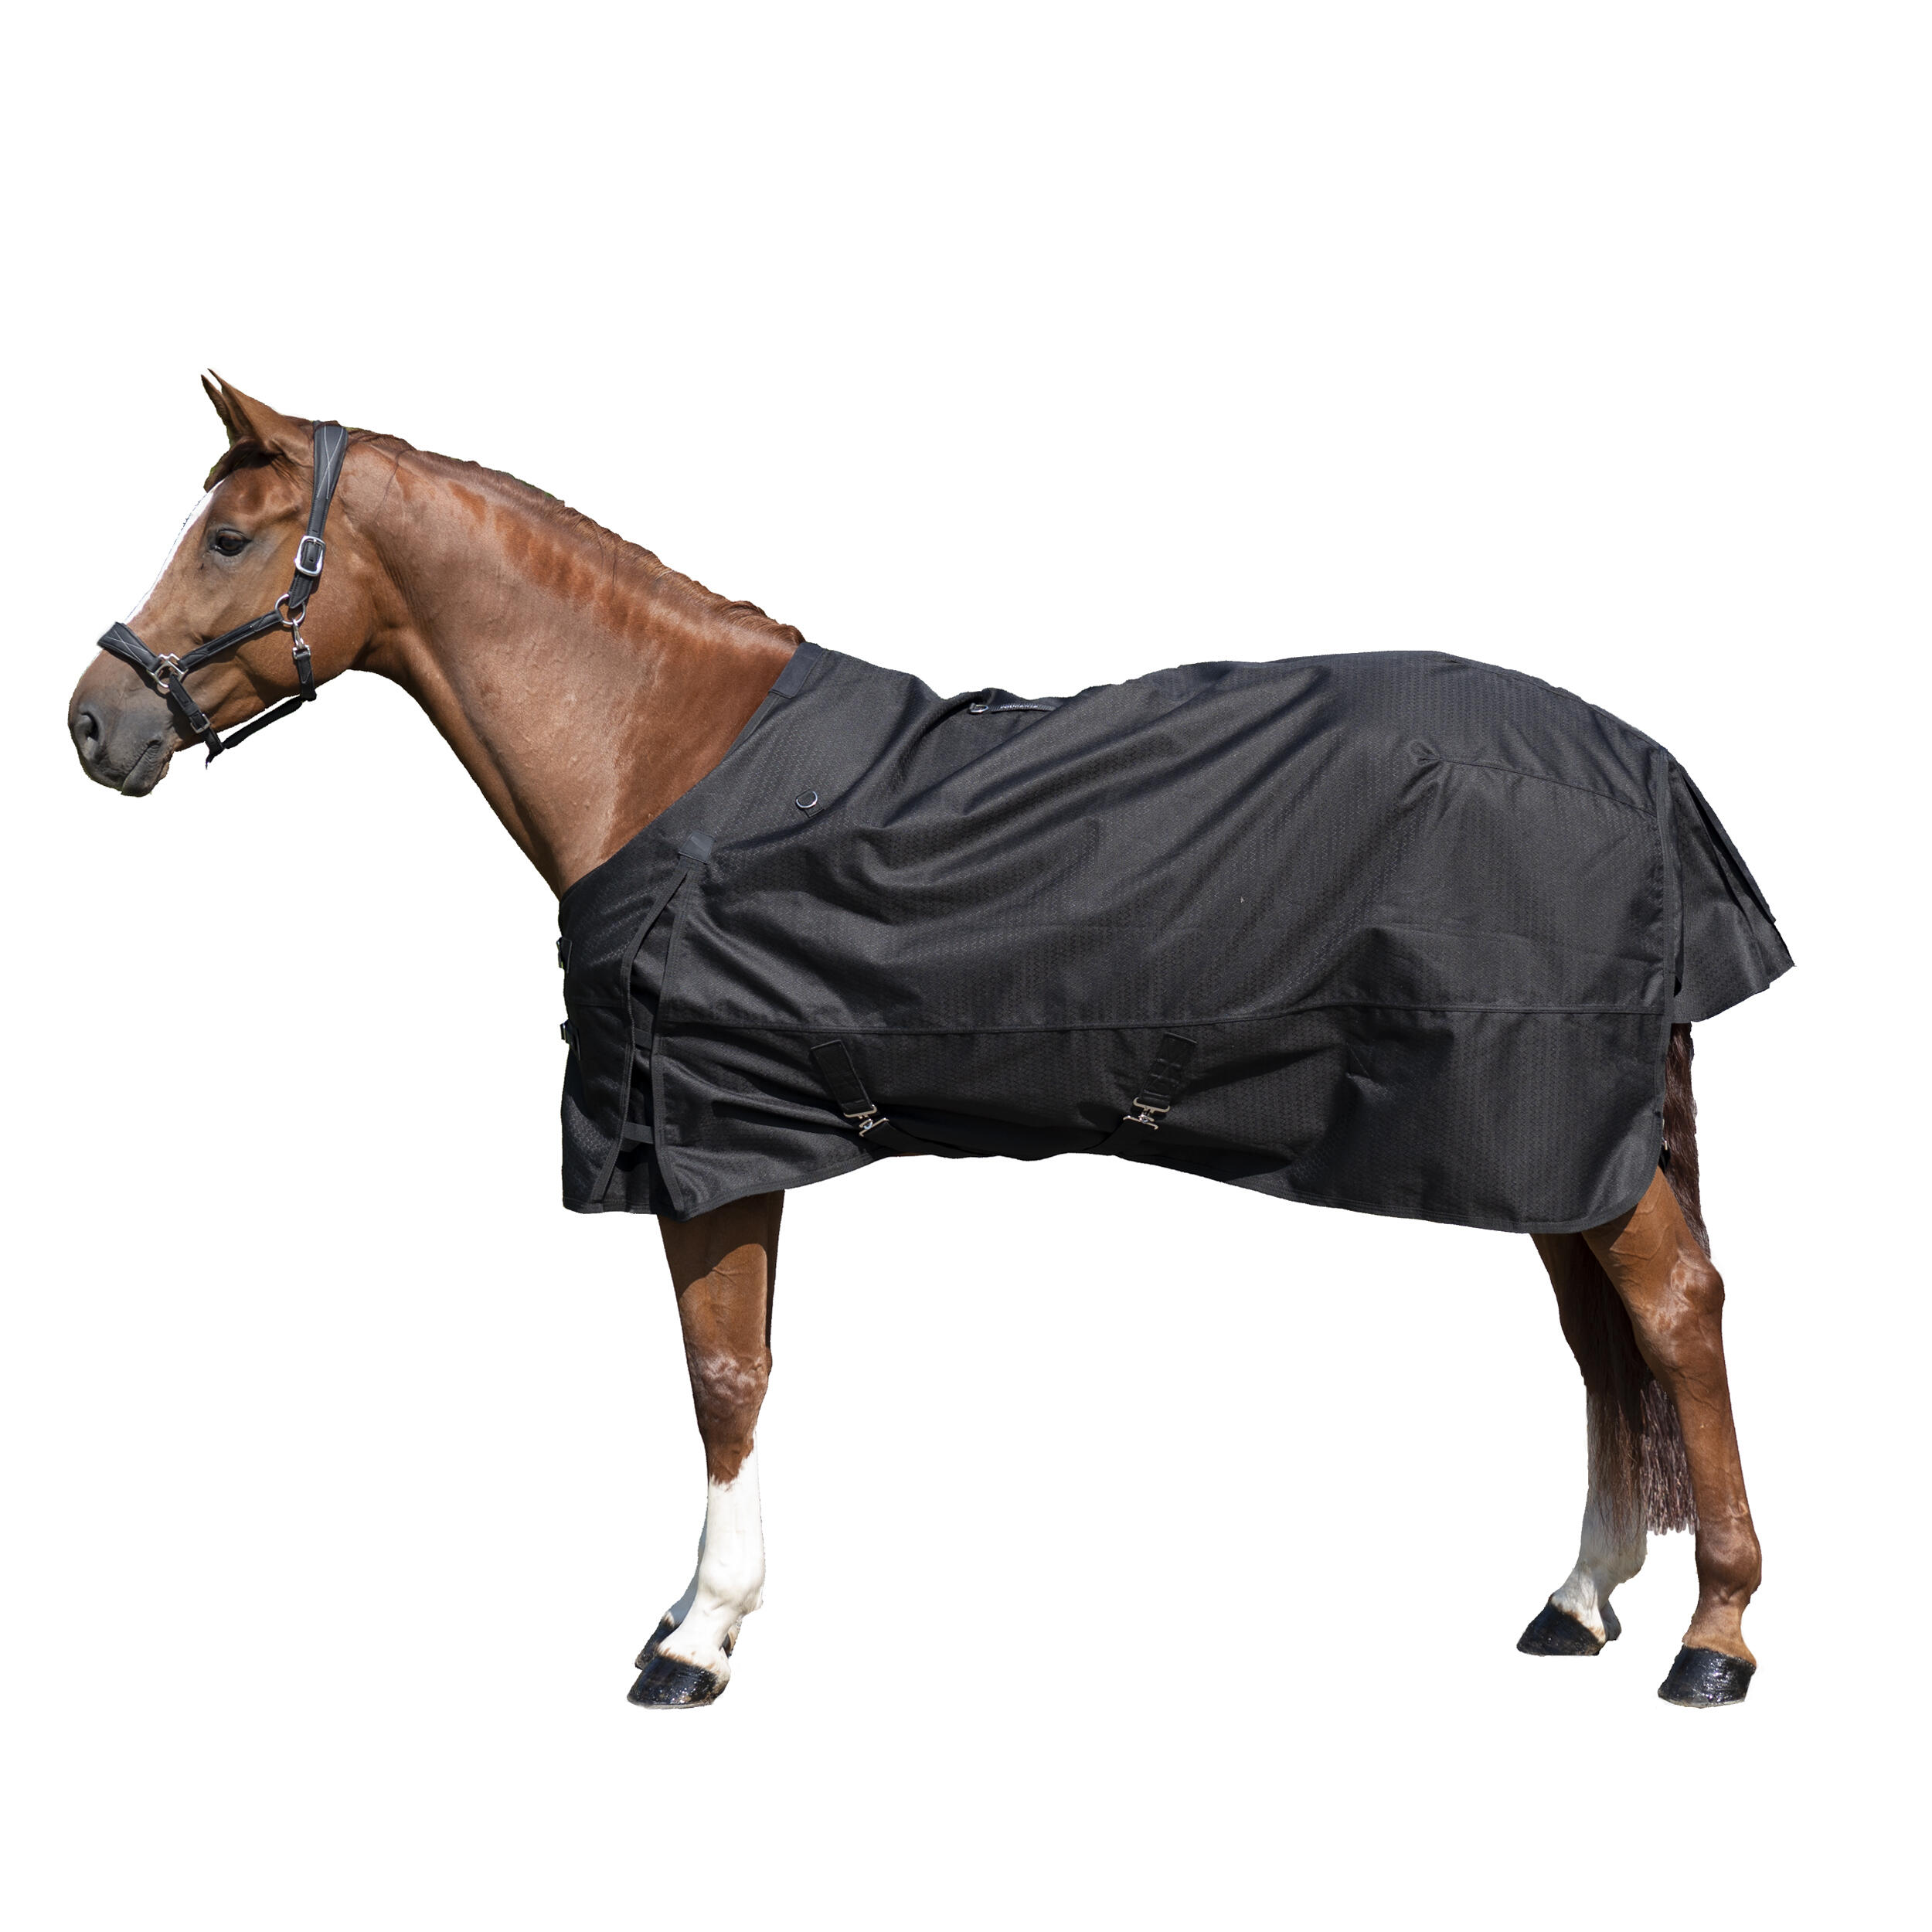 Pătură impermeabilă pentru exterior echitație ALLWEATHER 1000D negru cai decathlon.ro  Echipament cal